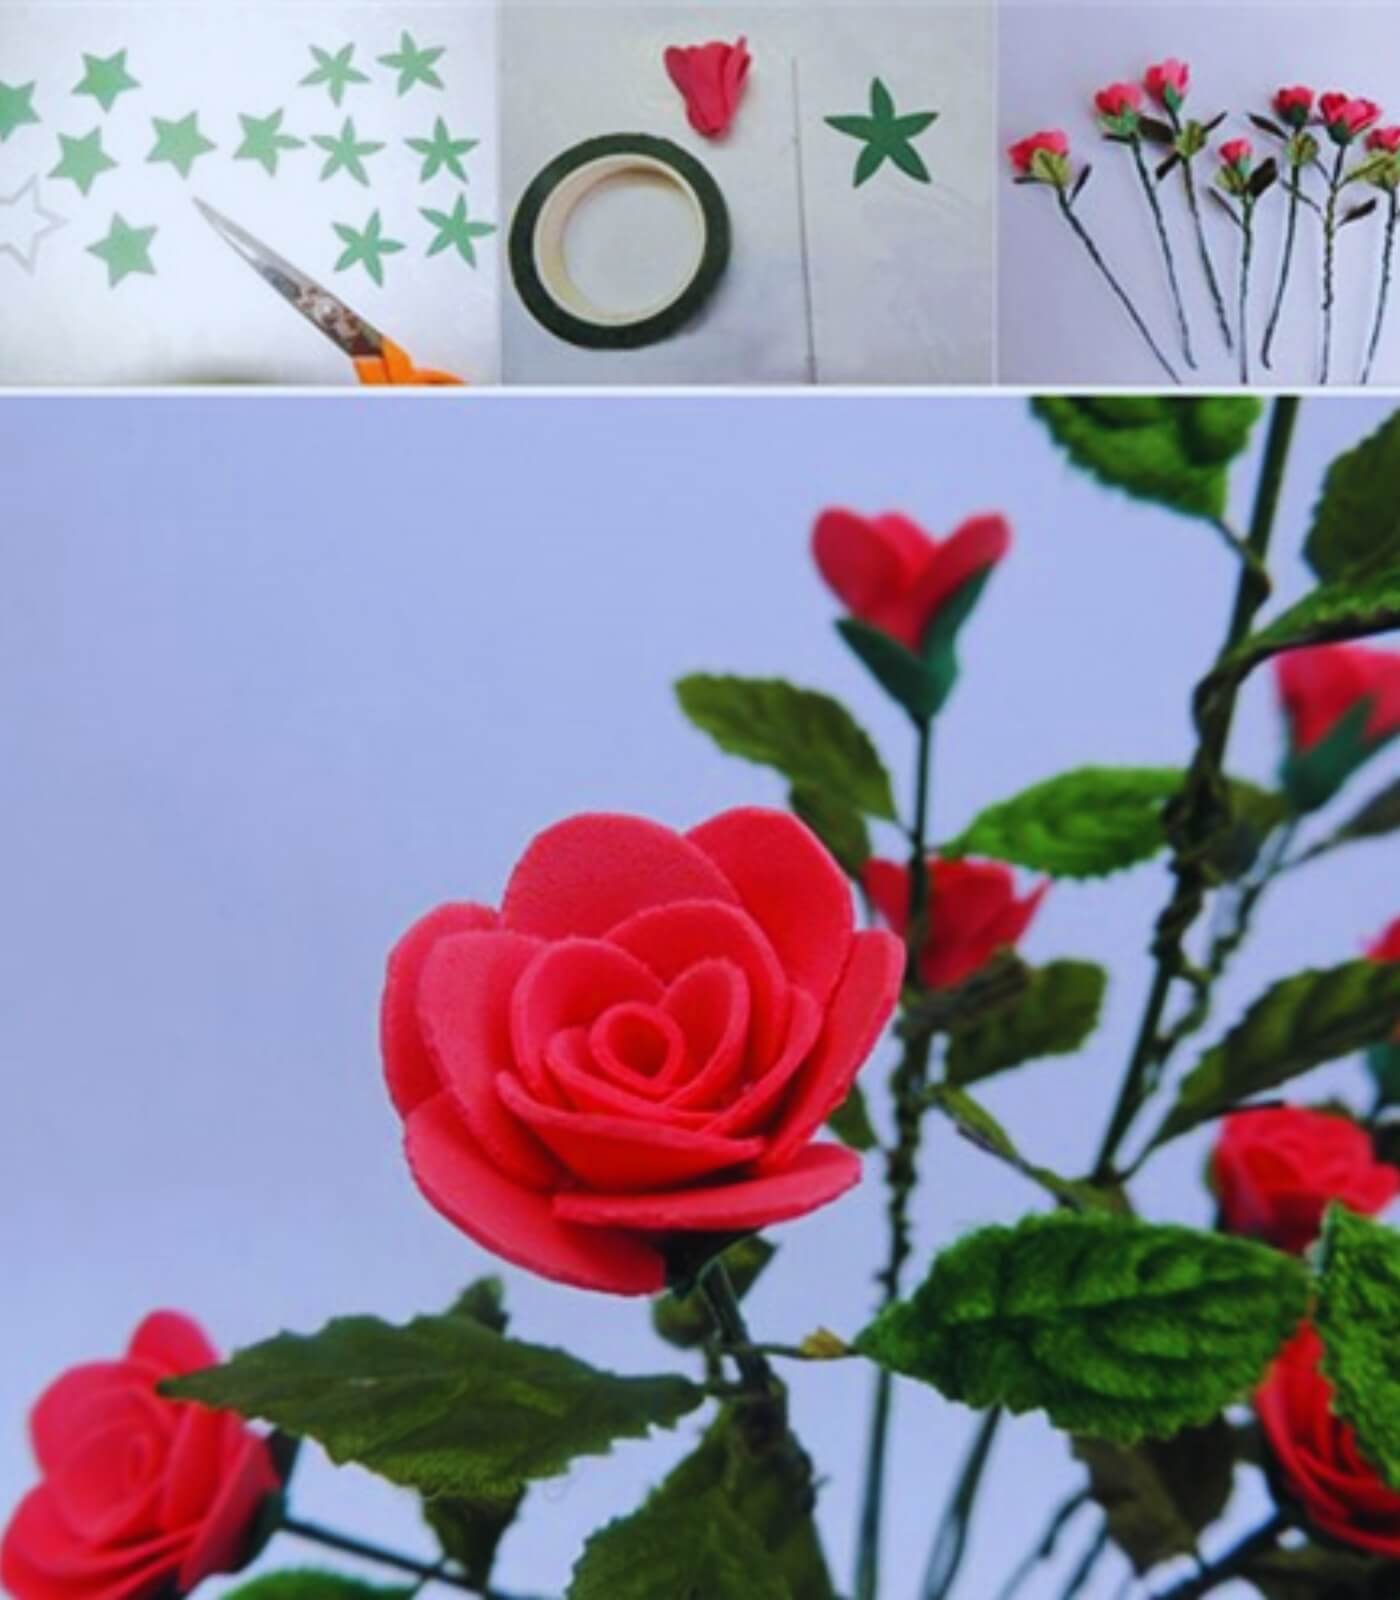 Hoàn thiện cách làm hoa bằng giấy xốp